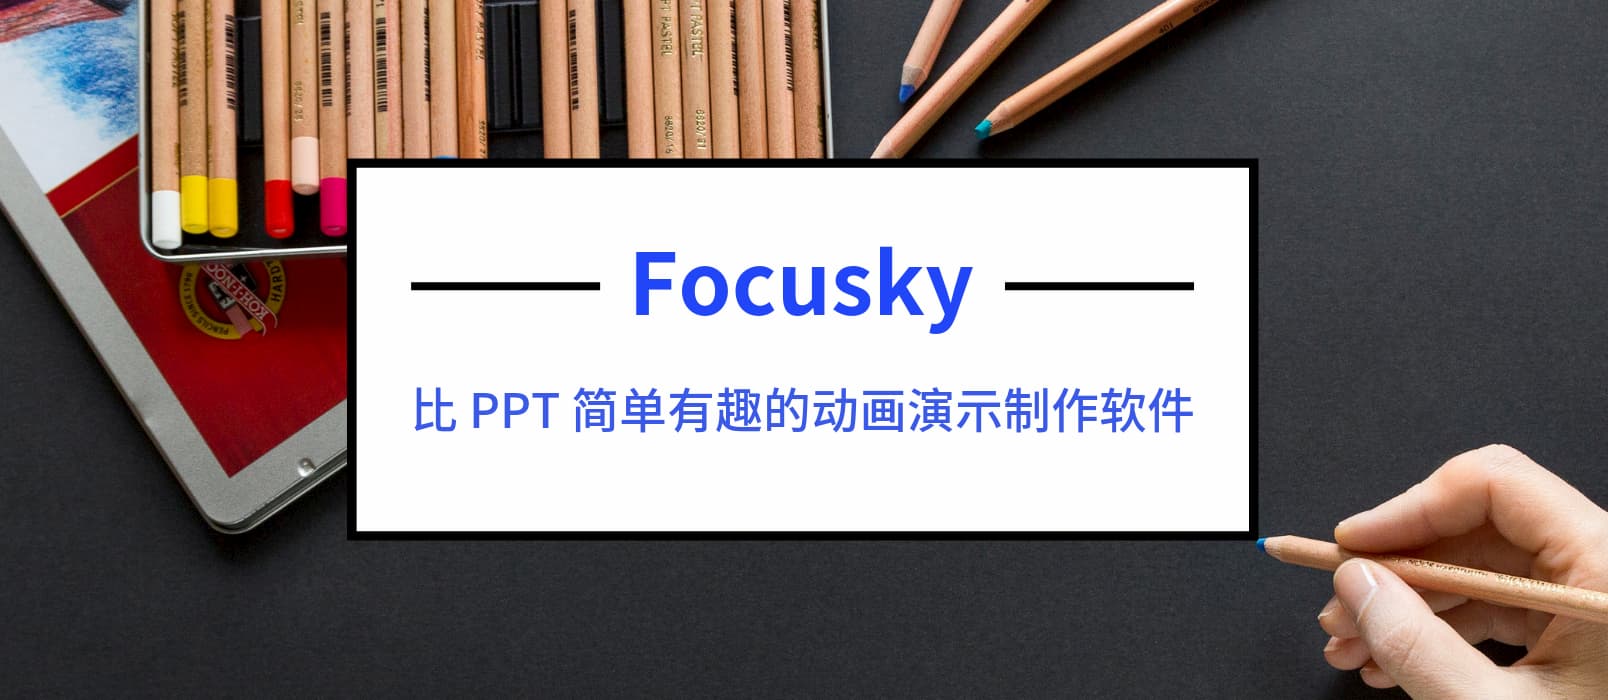 比 PPT 简单有趣的动画演示制作软件 Focusky 送特别版 1